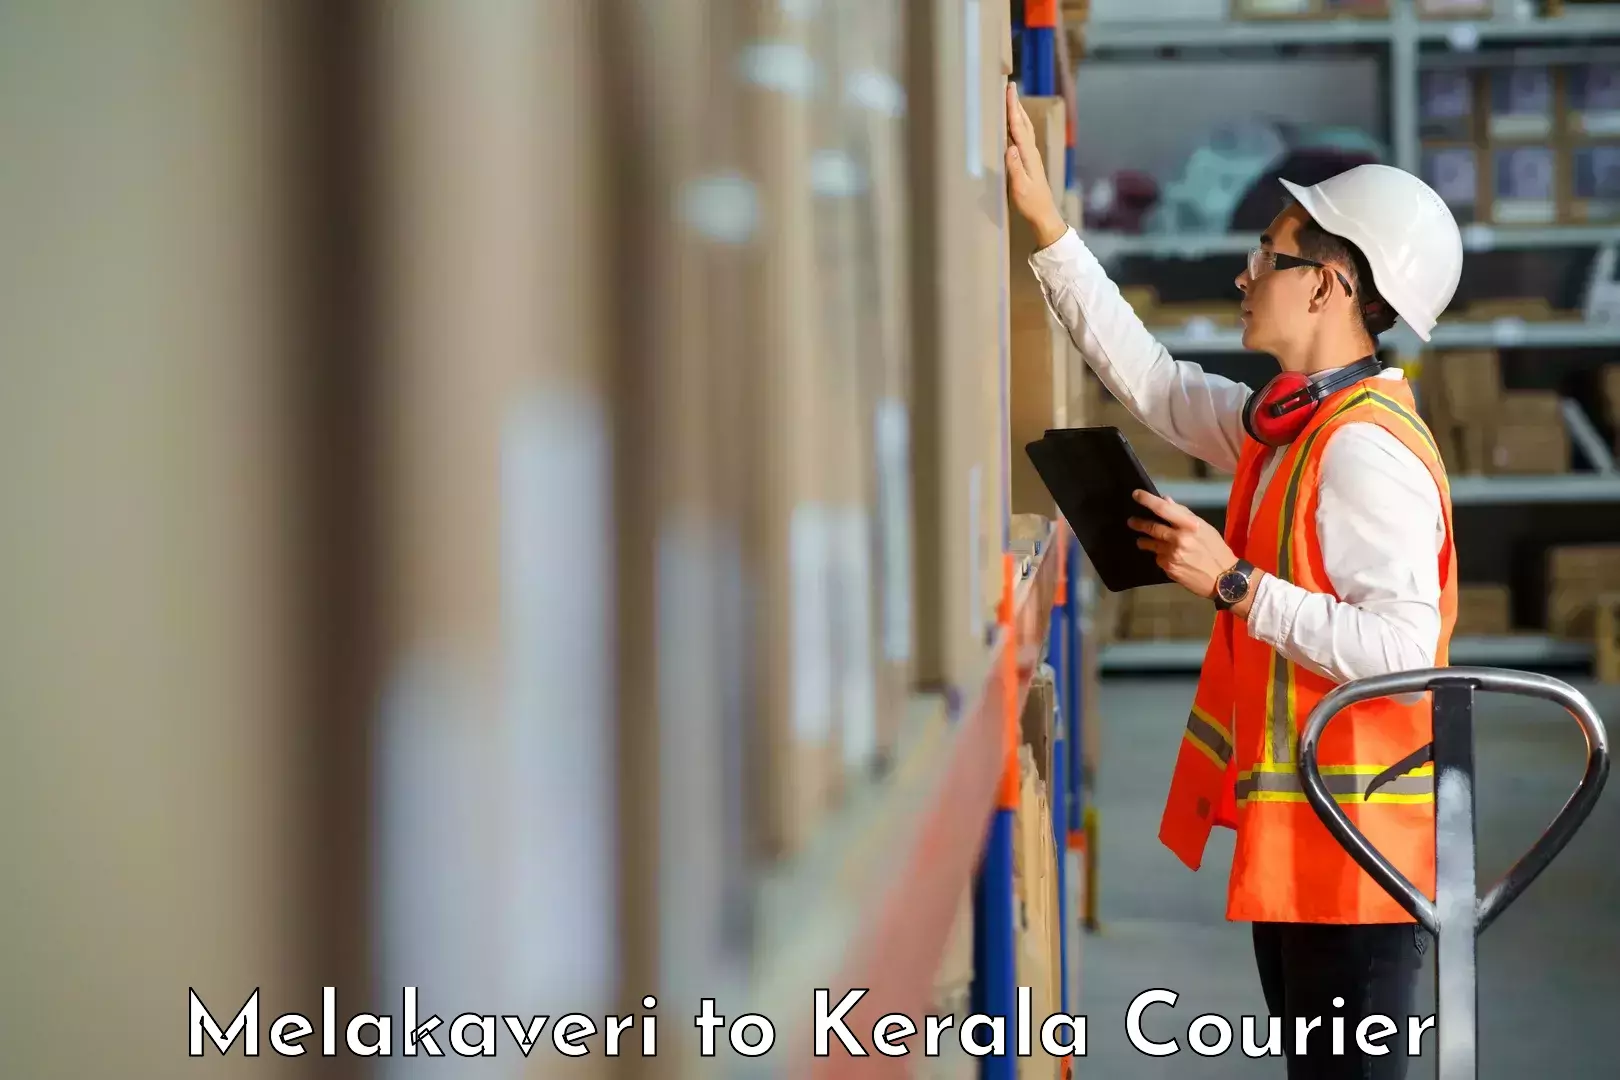 User-friendly courier app Melakaveri to IIIT Kottayam